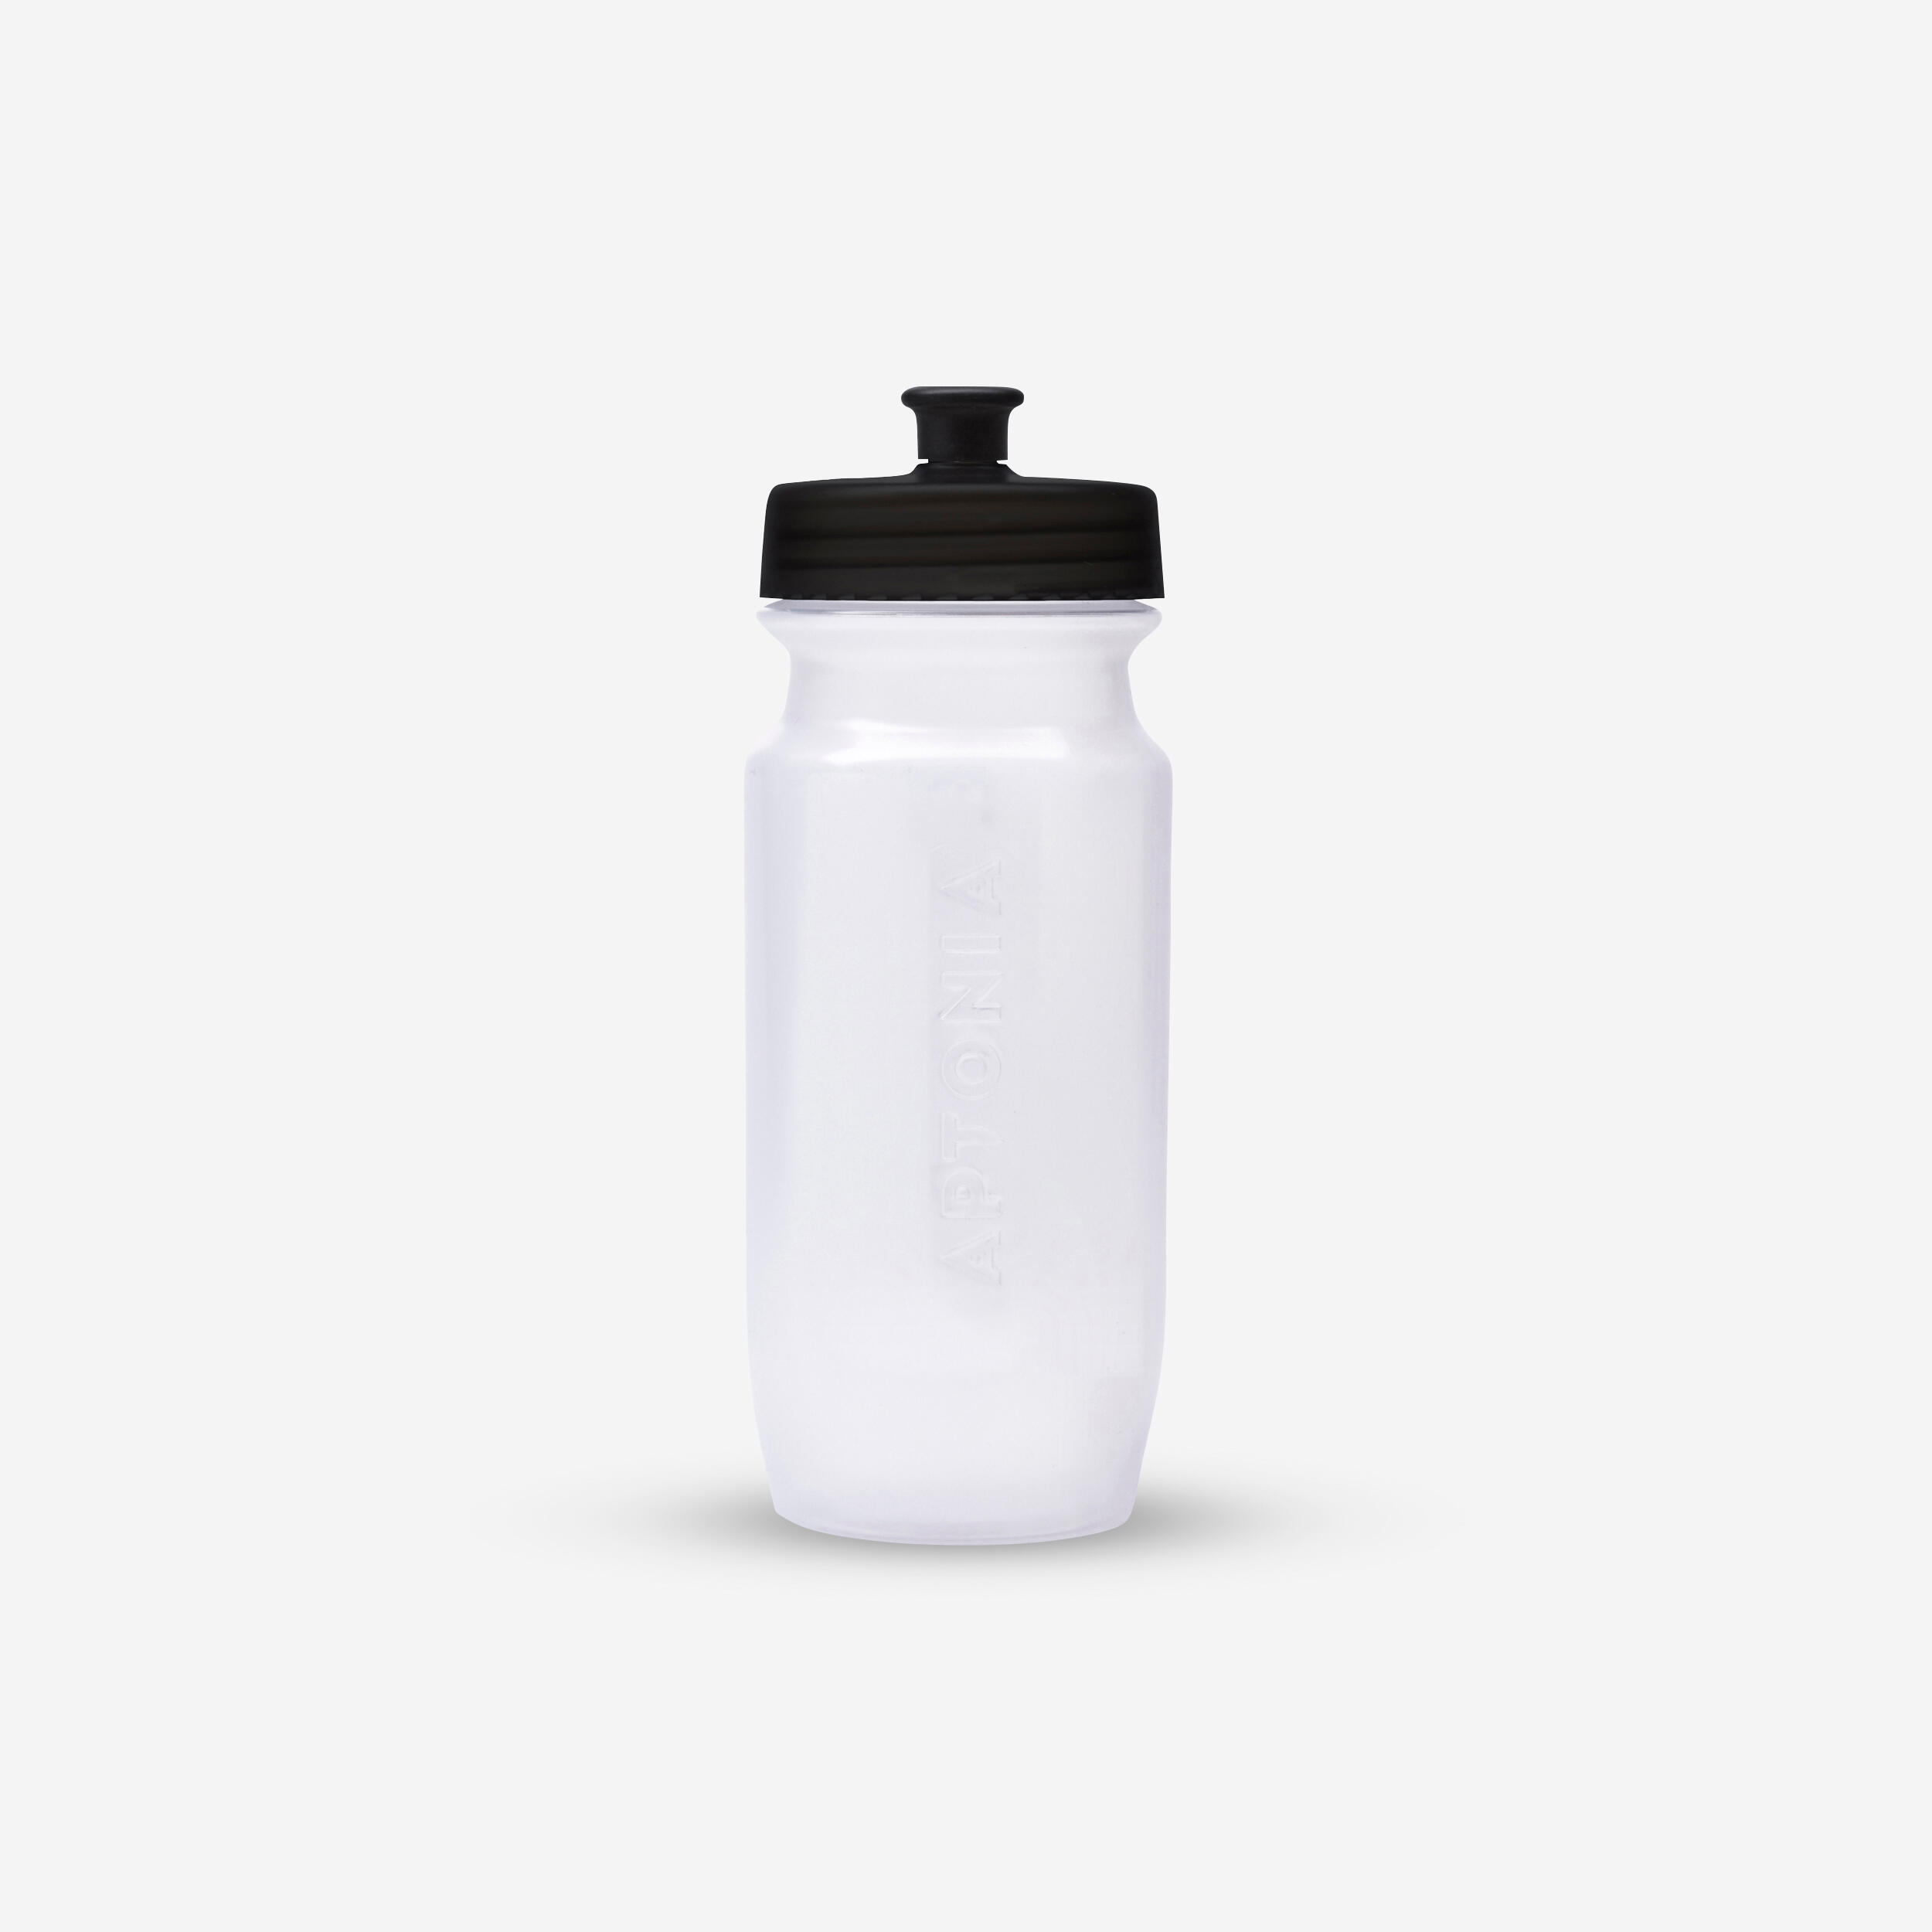 decathlon water bottle holder